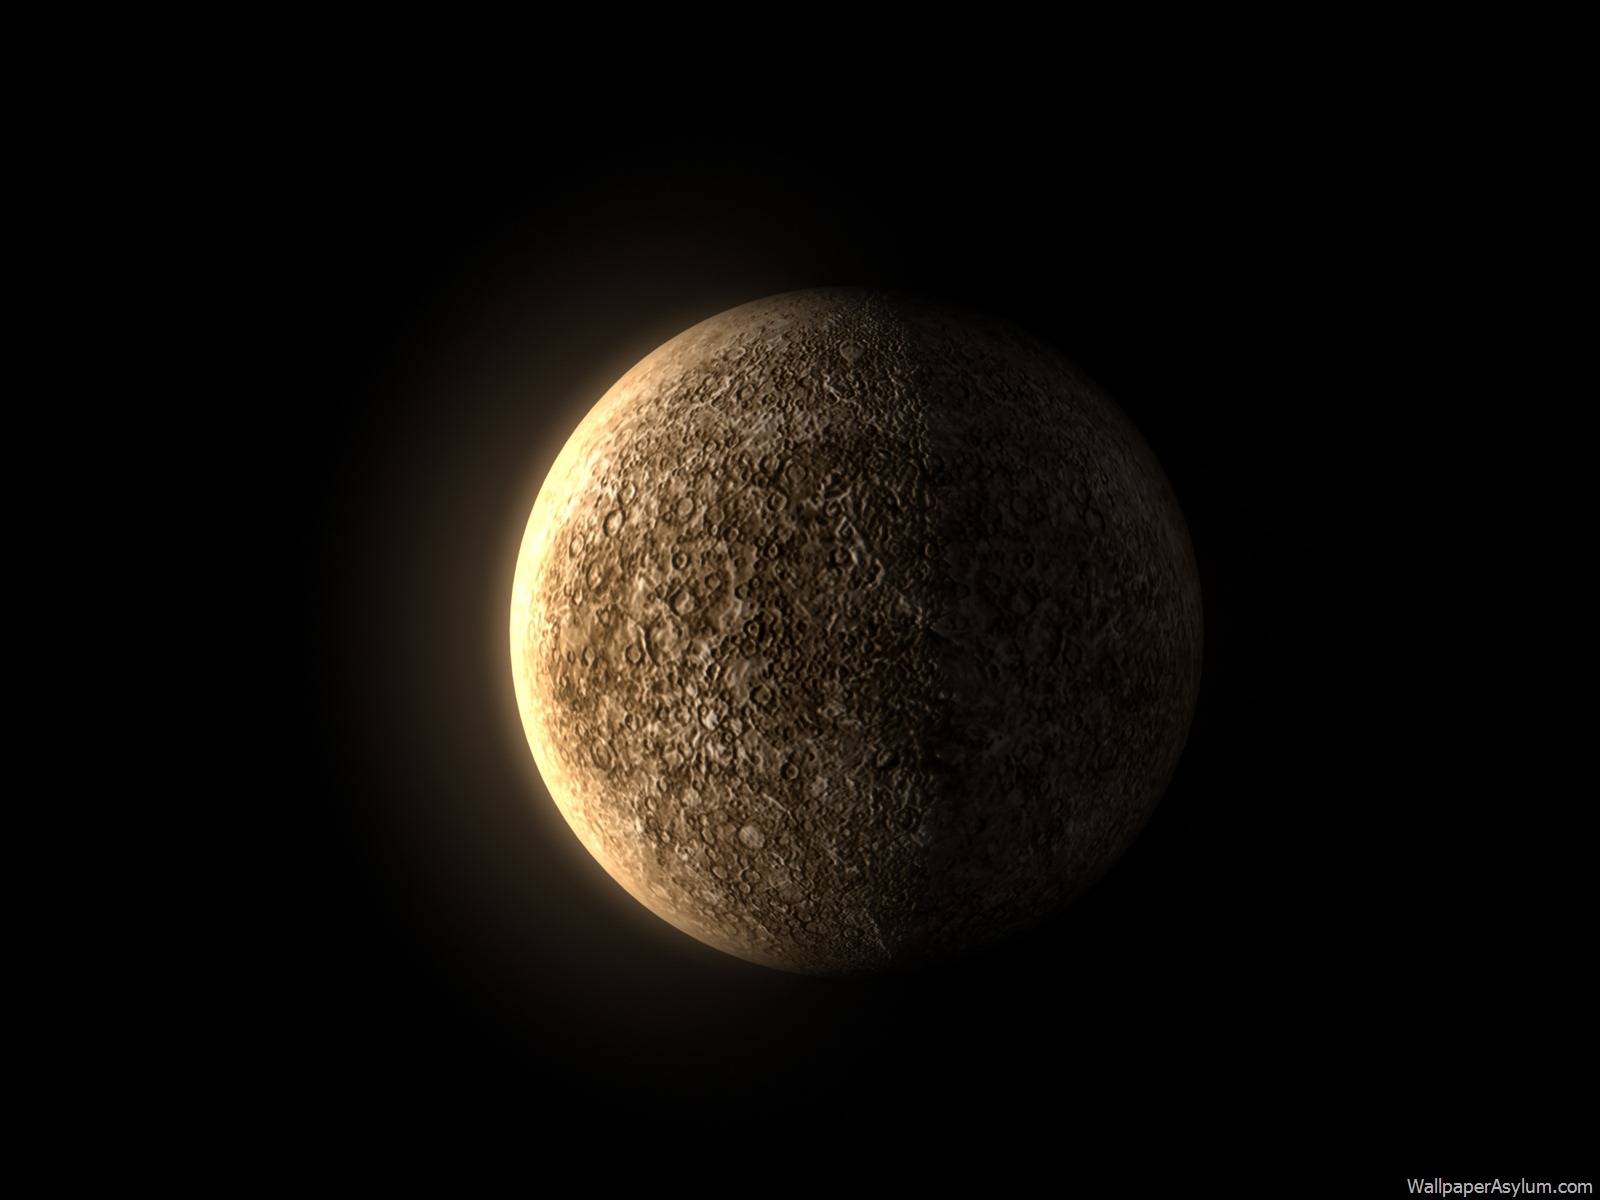 今年首次水星西大距6日上演 感受太阳系中最小行星真面貌 - 科学探索 - cnBeta.COM